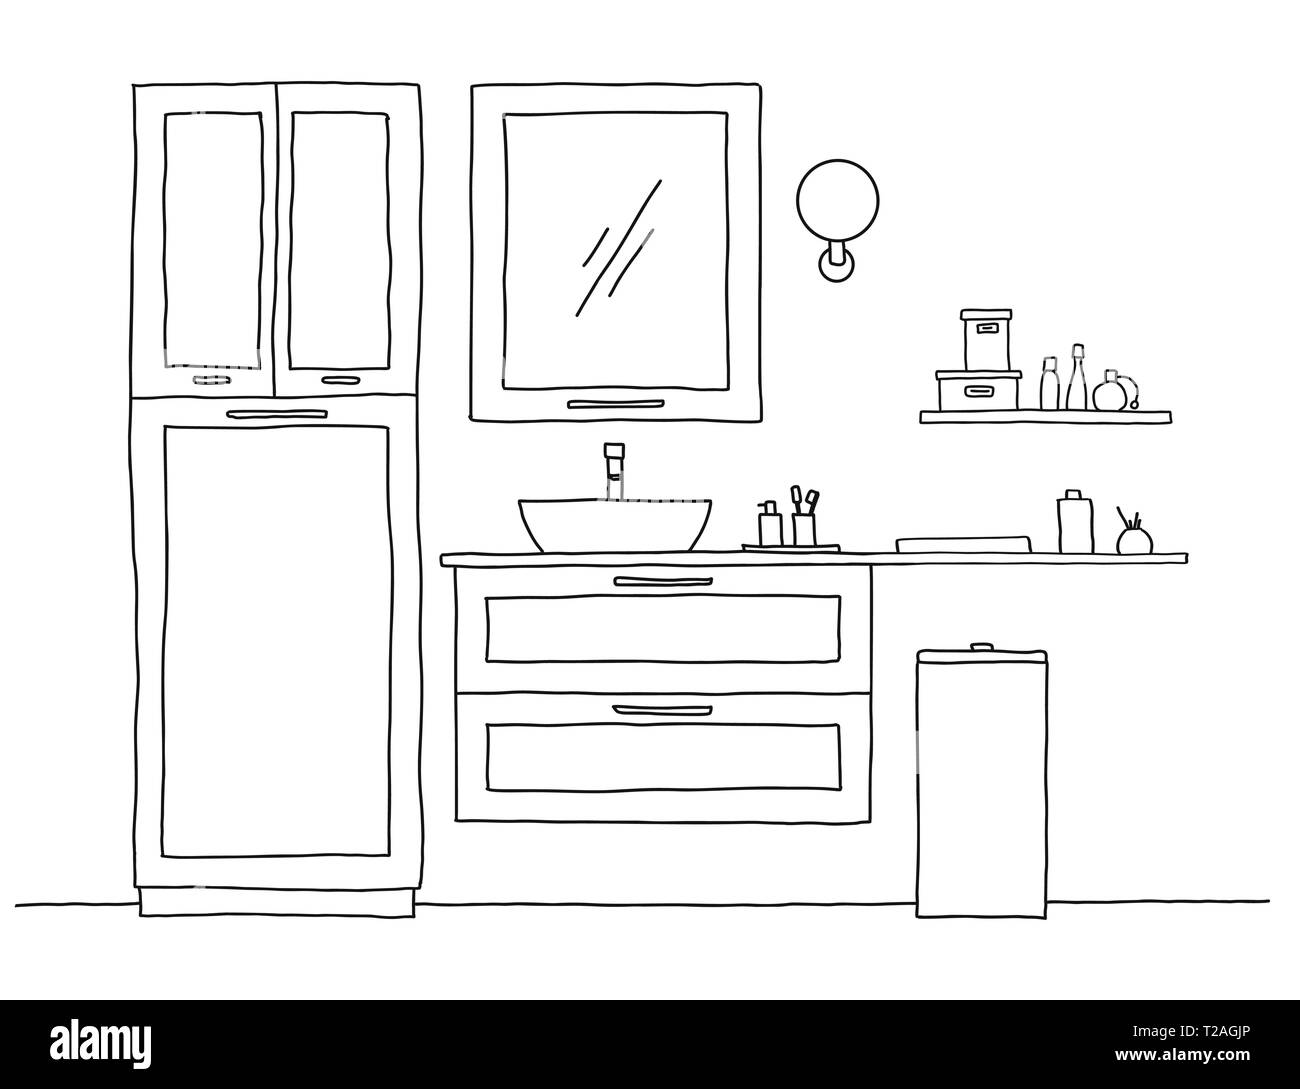 Das Badezimmer Skizze. Badezimmer Möbel und Waschbecken. Vektor  Stock-Vektorgrafik - Alamy